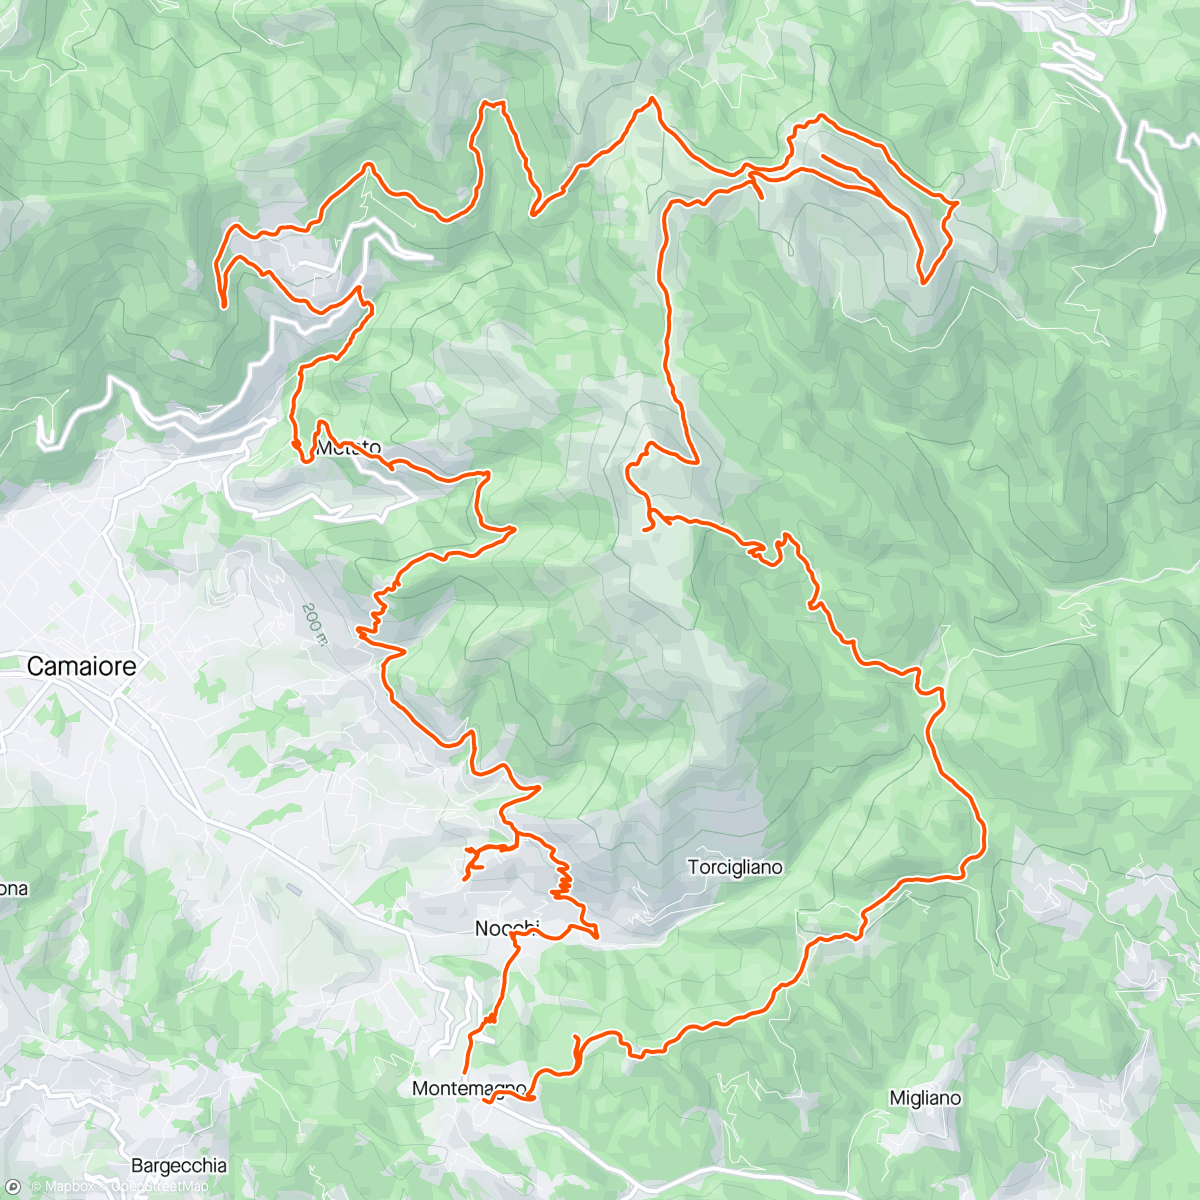 アクティビティ「Maratona Alpi Apuane Meridionali e traversata frazioni Camaioresi Vette M.Prano M.Prana M.Piglione ⛰️⛰️⛰️🔝🔝🔝💪🏼🤙🏻」の地図